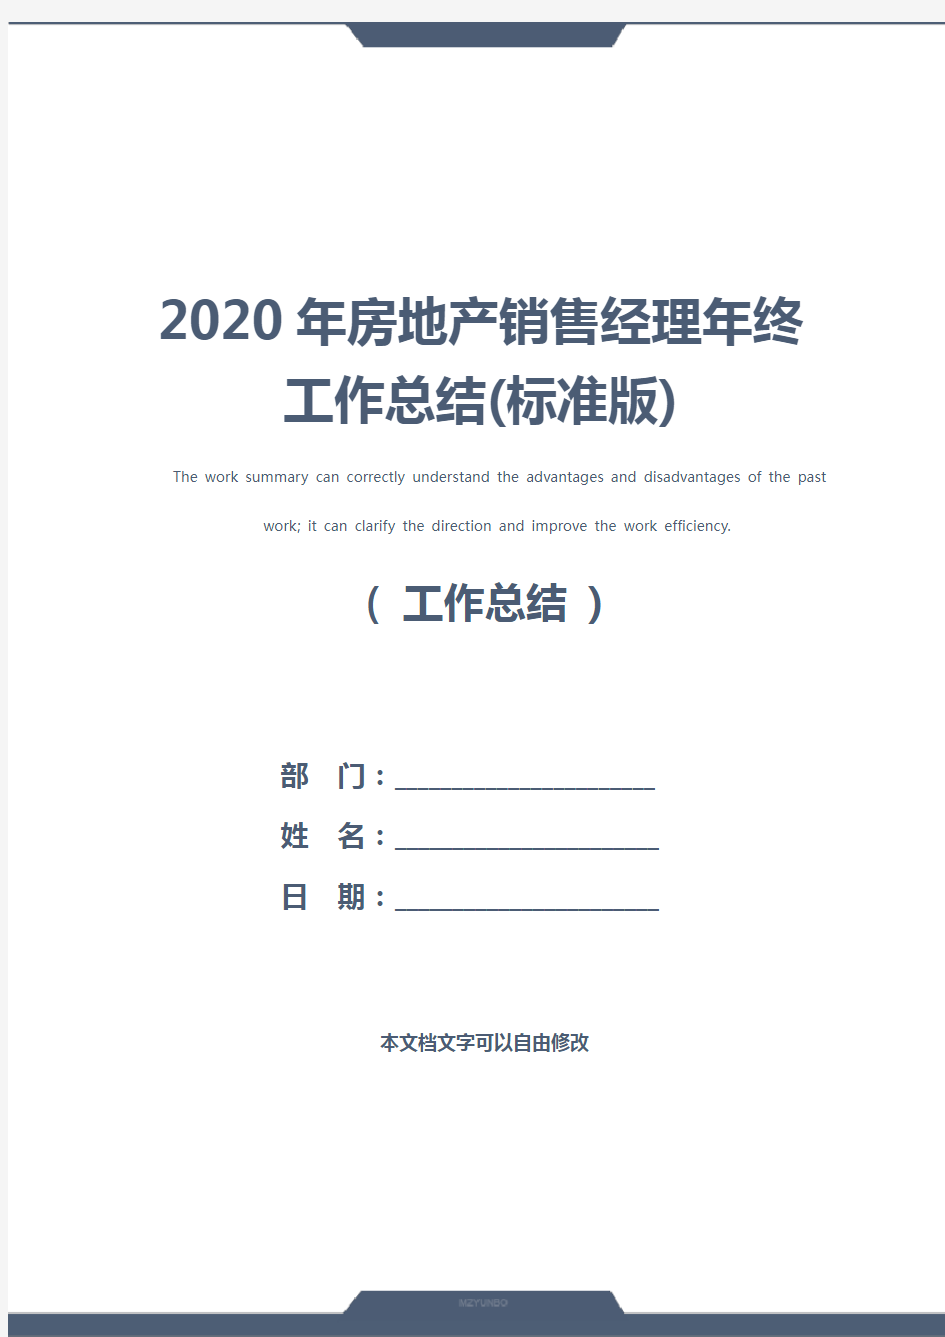 2020年房地产销售经理年终工作总结(标准版)